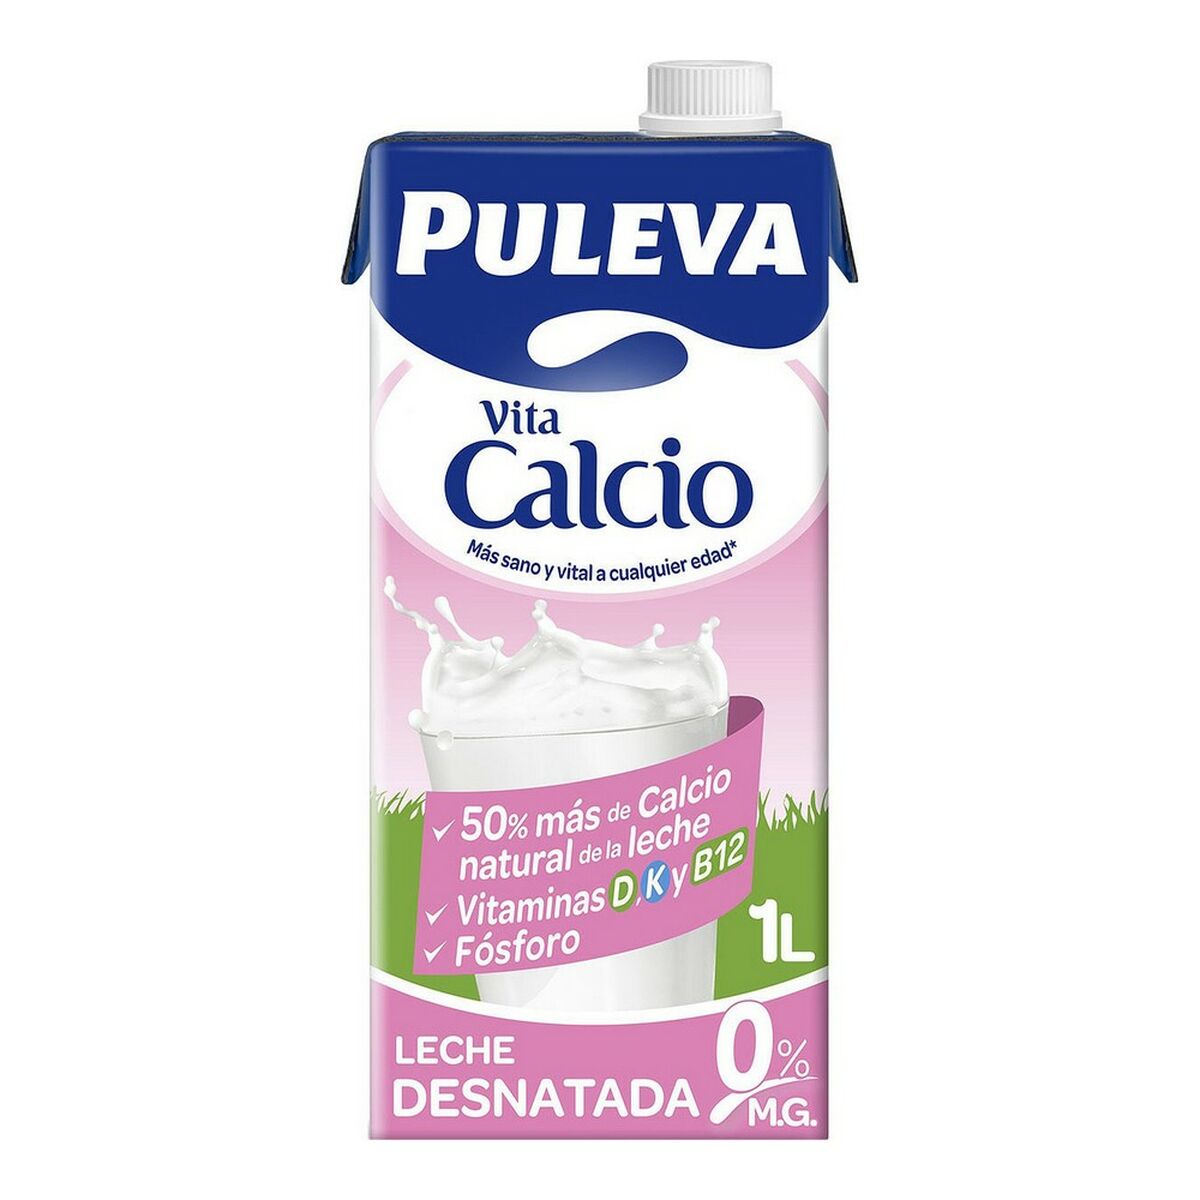 Skimmed milk Puleva Calcium (1 L)